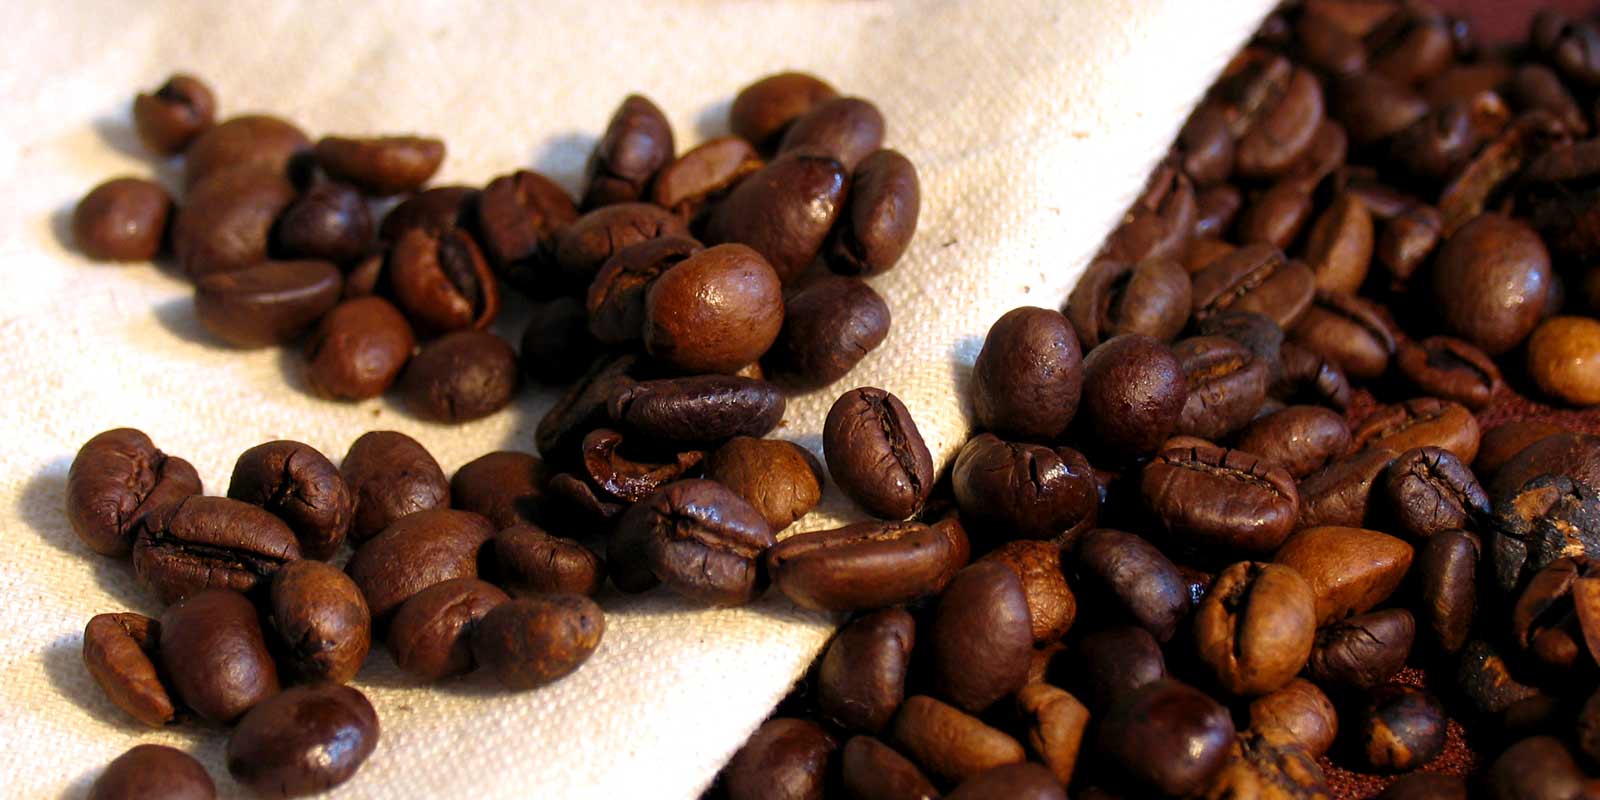 Kava / espresso Ovdje cete pronaci razlicite vrste kave posebne vrste.